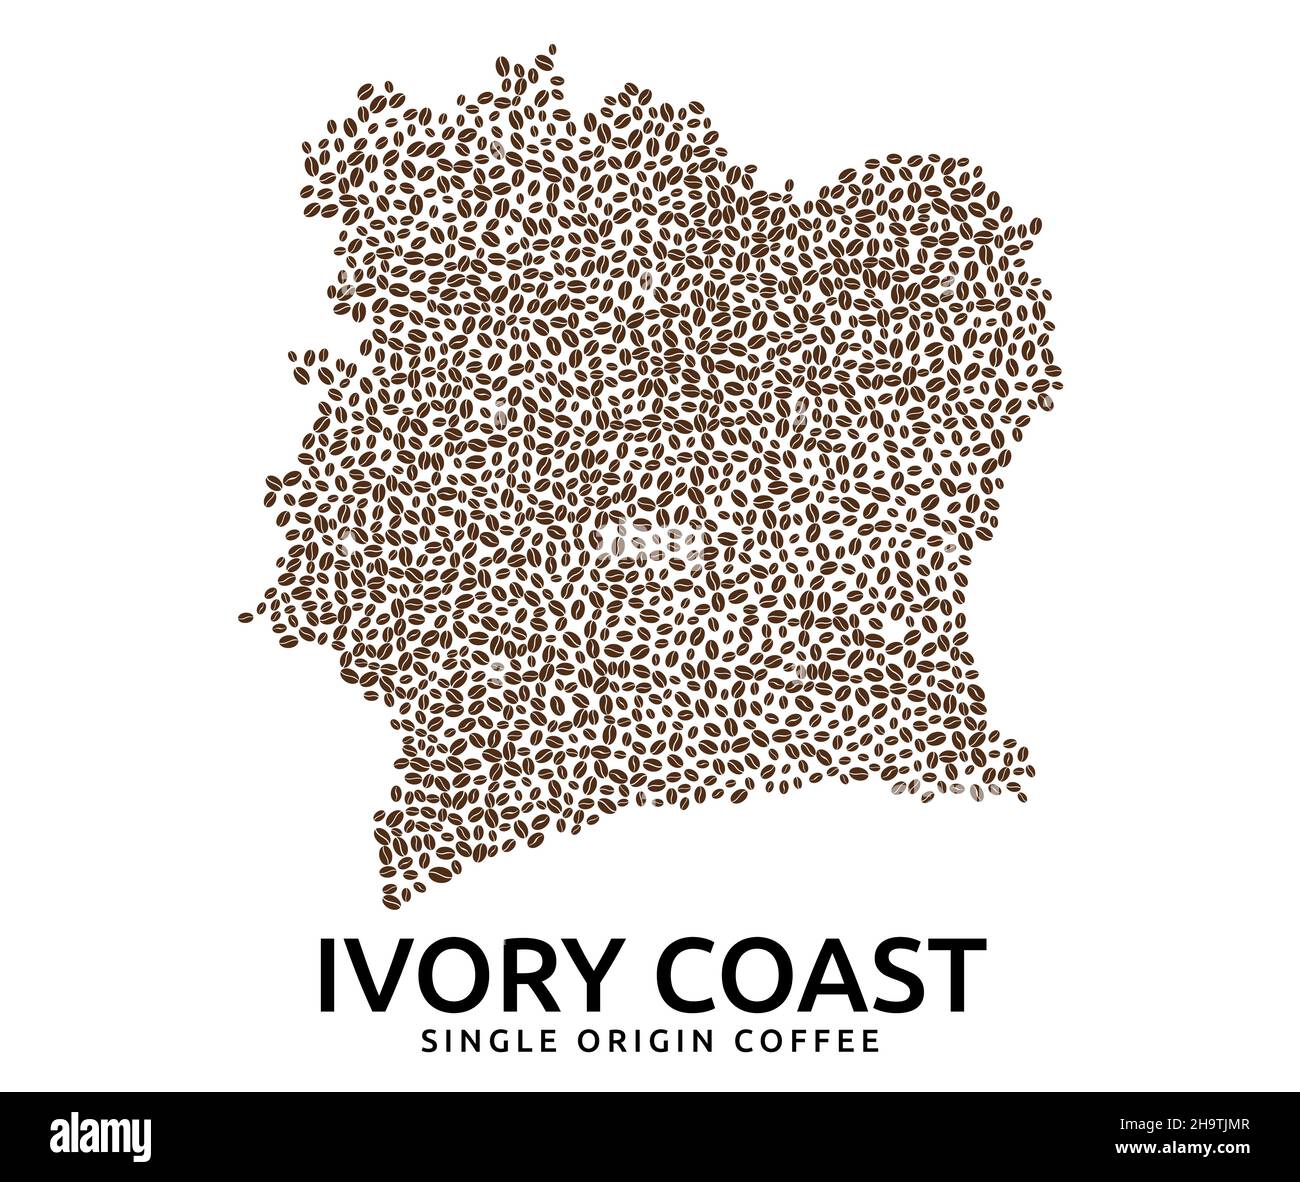 Forme de la Côte d'Ivoire carte faite de grains de café éparpillés, nom de pays ci-dessous Illustration de Vecteur